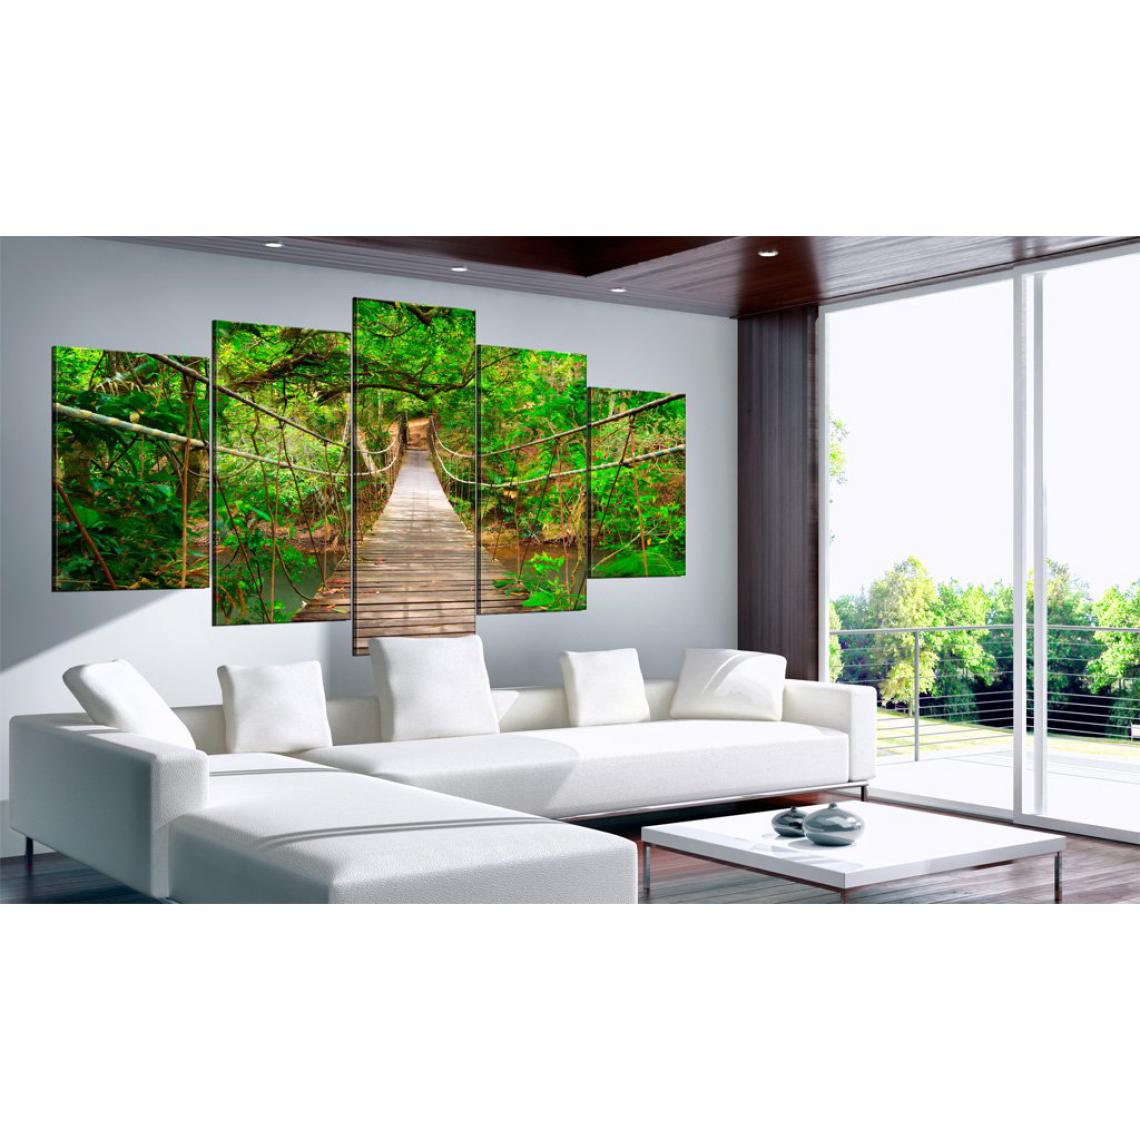 Decoshop26 - Tableau sur toile en 5 panneaux décoration murale image imprimée cadre en bois à suspendre promenade parmi les arbres 200x100 cm 11_0006153 - Tableaux, peintures